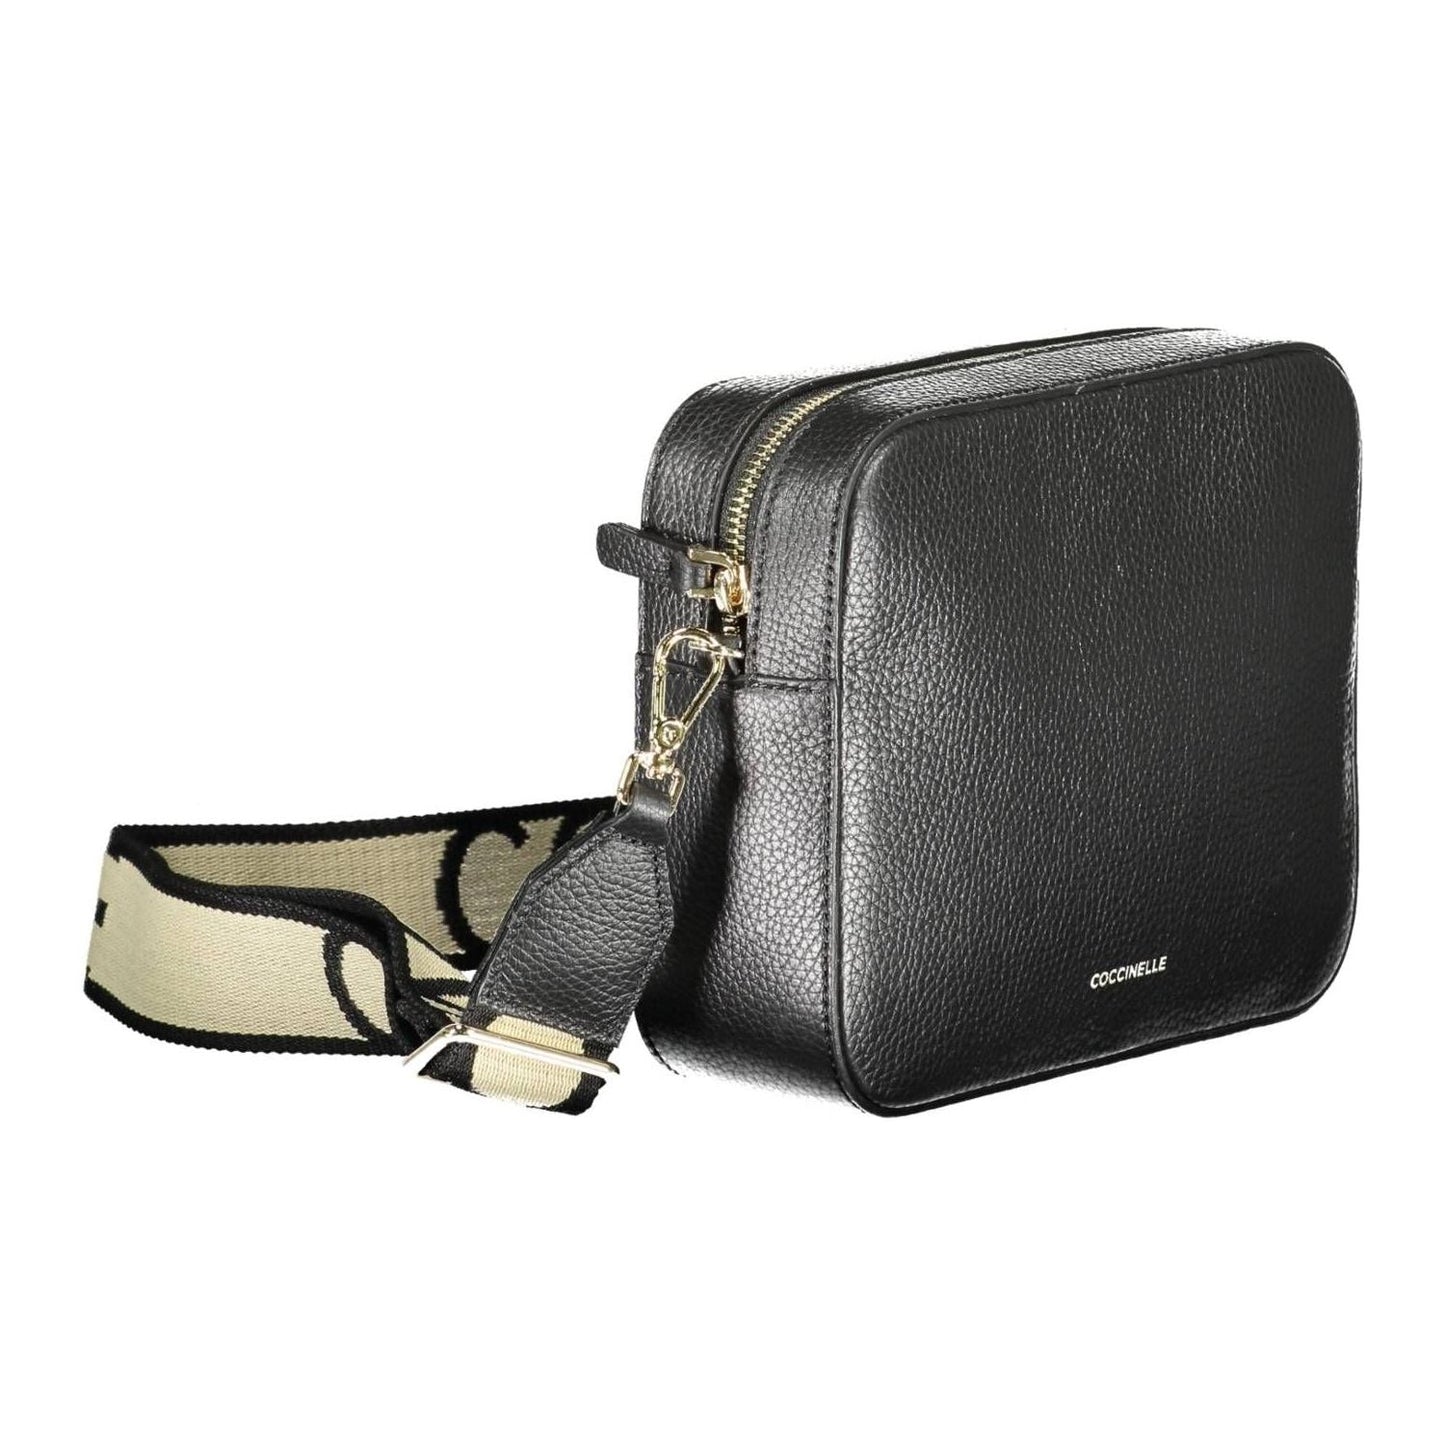 Coccinelle Elegant Black Leather Shoulder Bag with Contrasting Details elegant-black-leather-shoulder-bag-with-contrasting-details